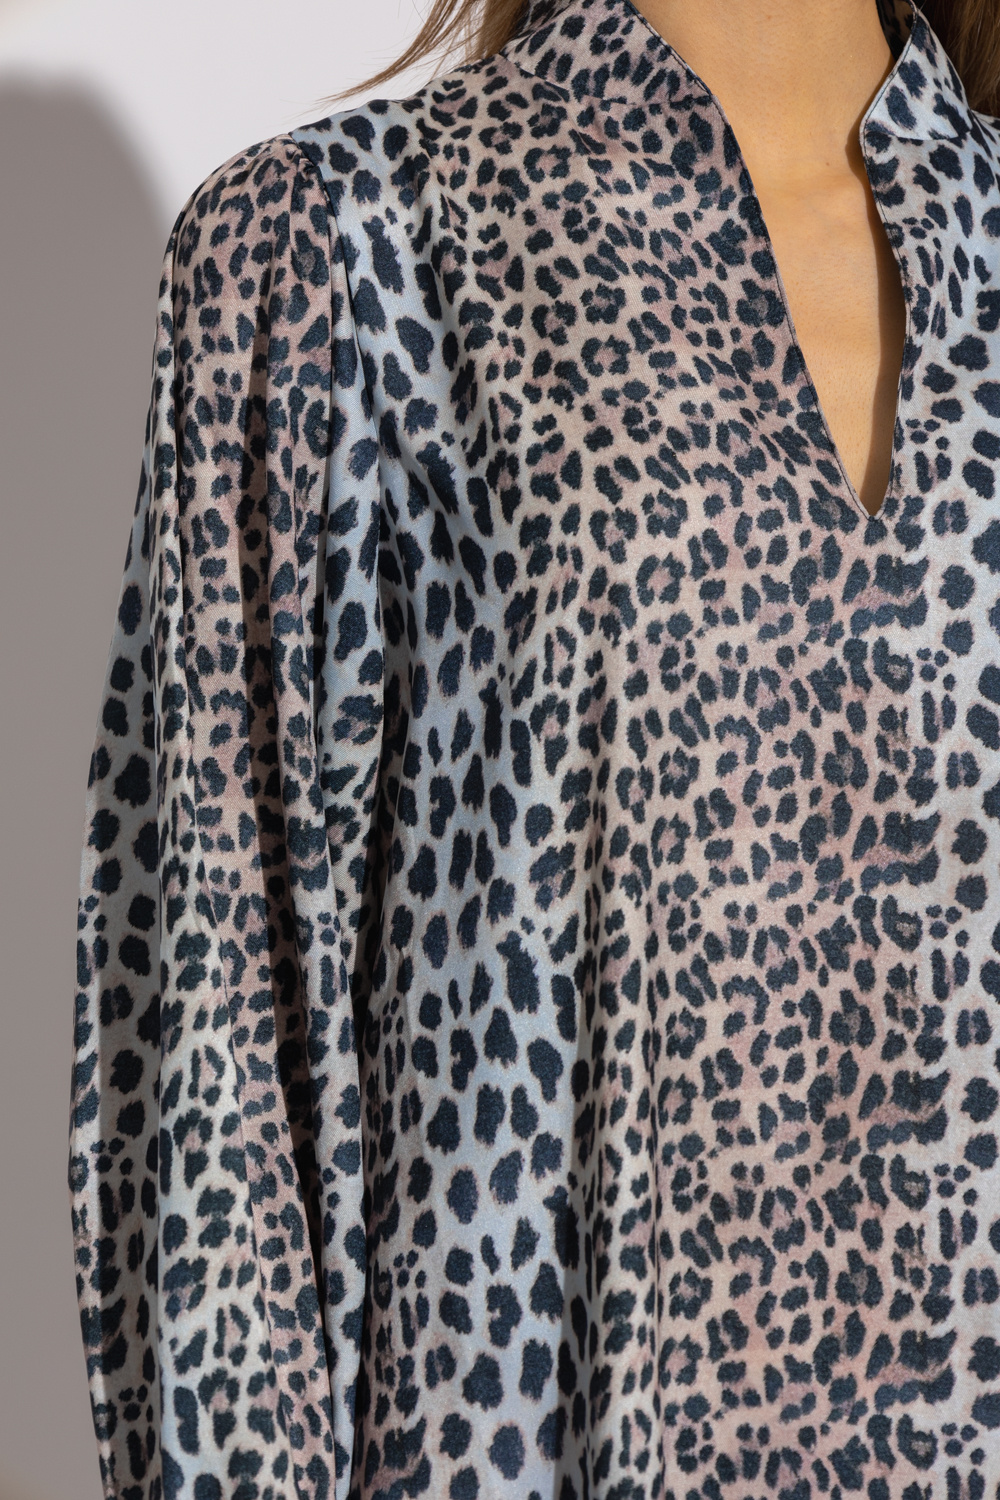 robe safari jean gabriel taille ‘Claire’ dress